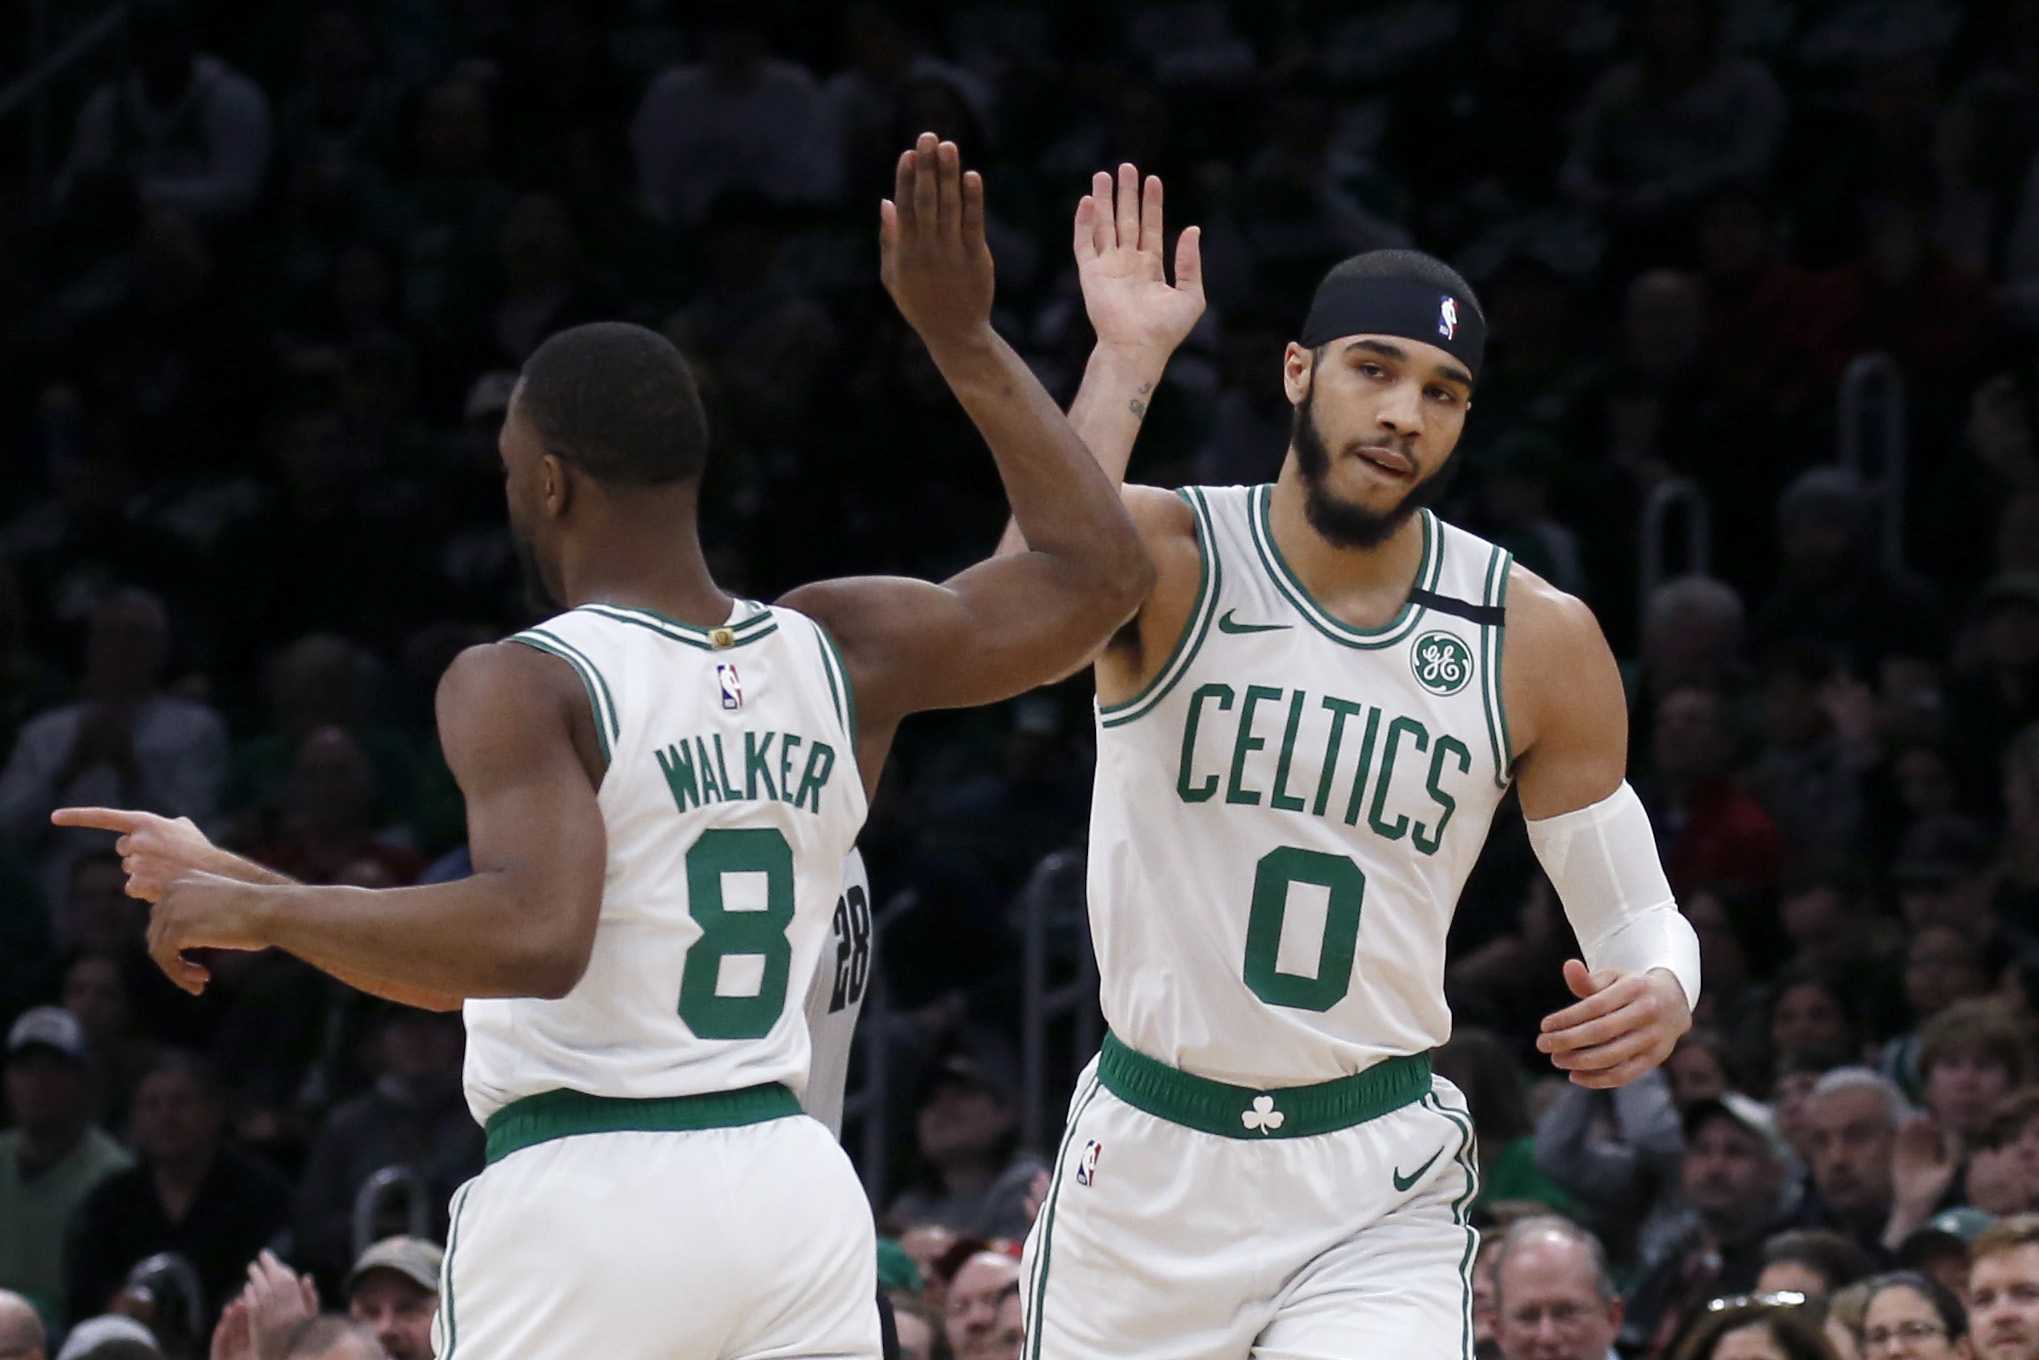 "Il n'est pas encore prêt": un analyste de la NBA rejette le battage médiatique derrière Jayson Tatum des Boston Celtics